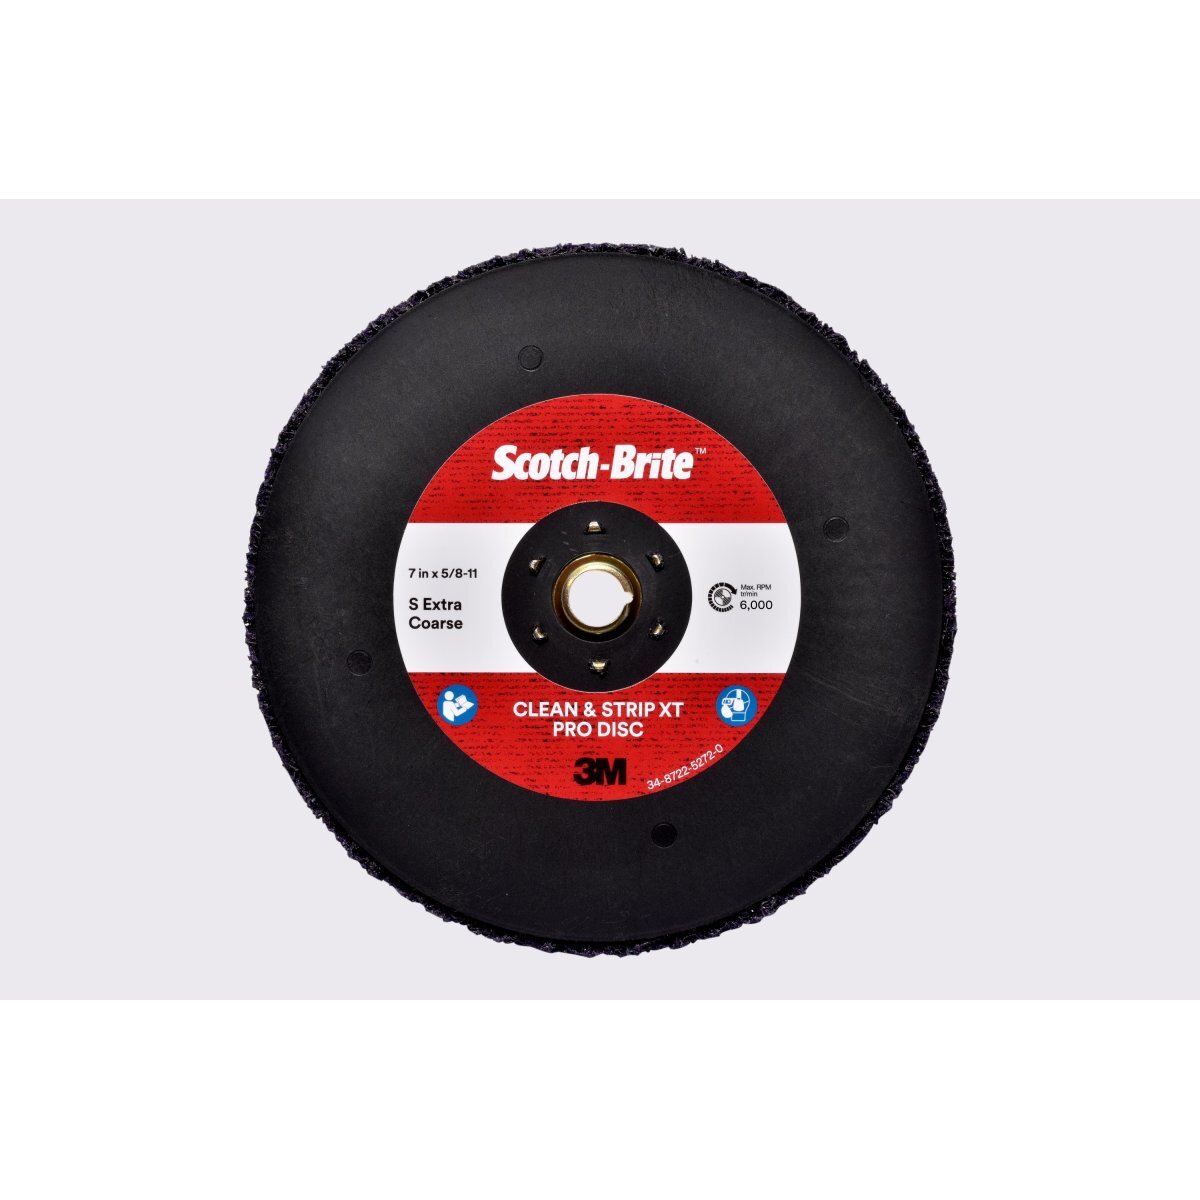 Scotch-Brite Clean and Strip XT Pro Extra Cut Disc 4-1/2 in x 5/8 in-11 10 per case 3M A XCS T27 Quick Change